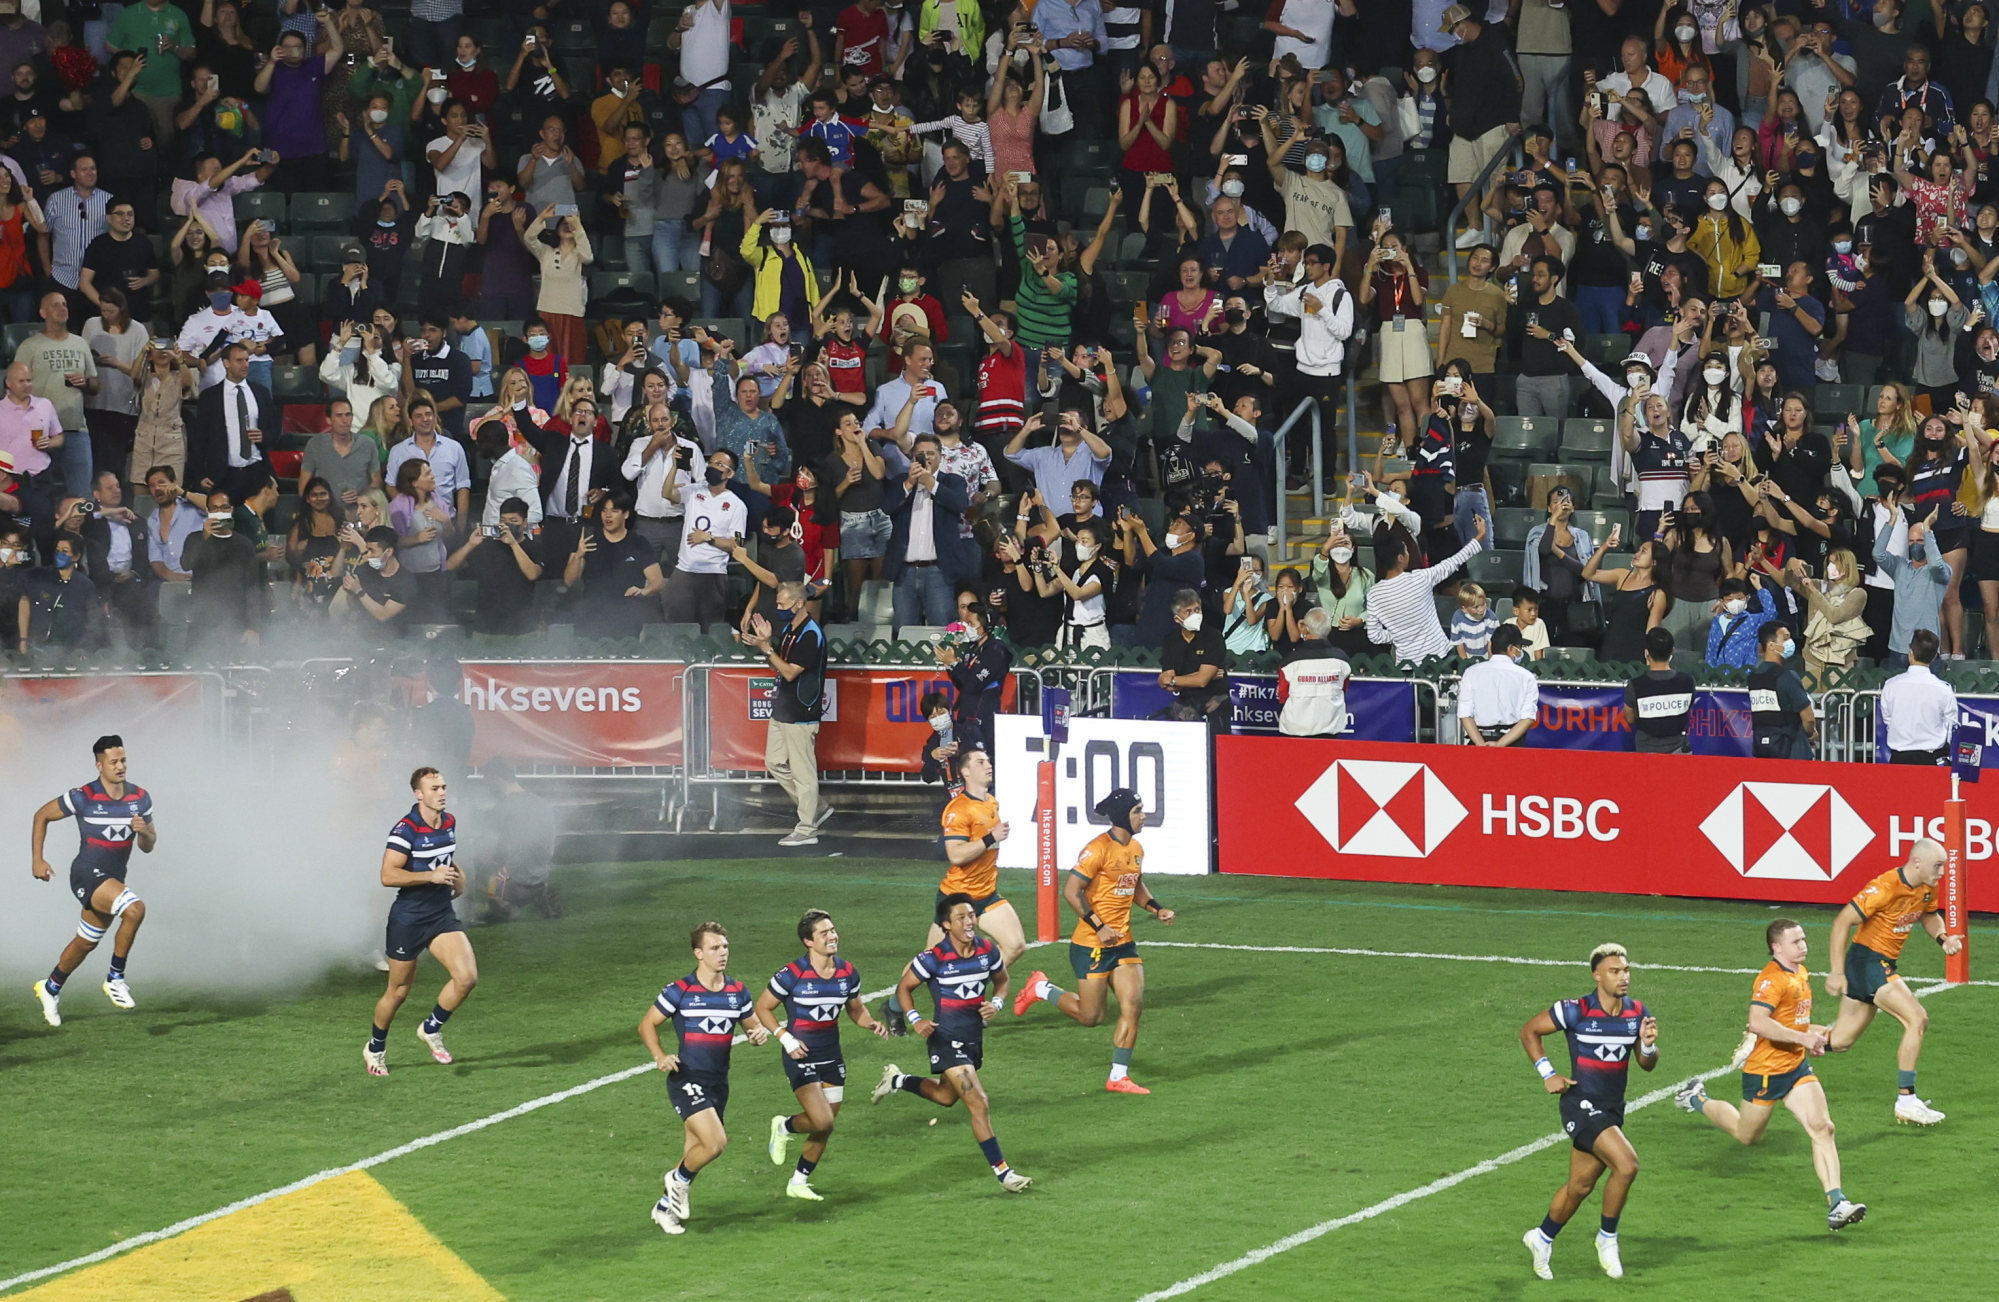 Rugby Magnificent Sevens kembali dengan heboh untuk pertama kalinya sejak Covid-19 melanda Hong Kong